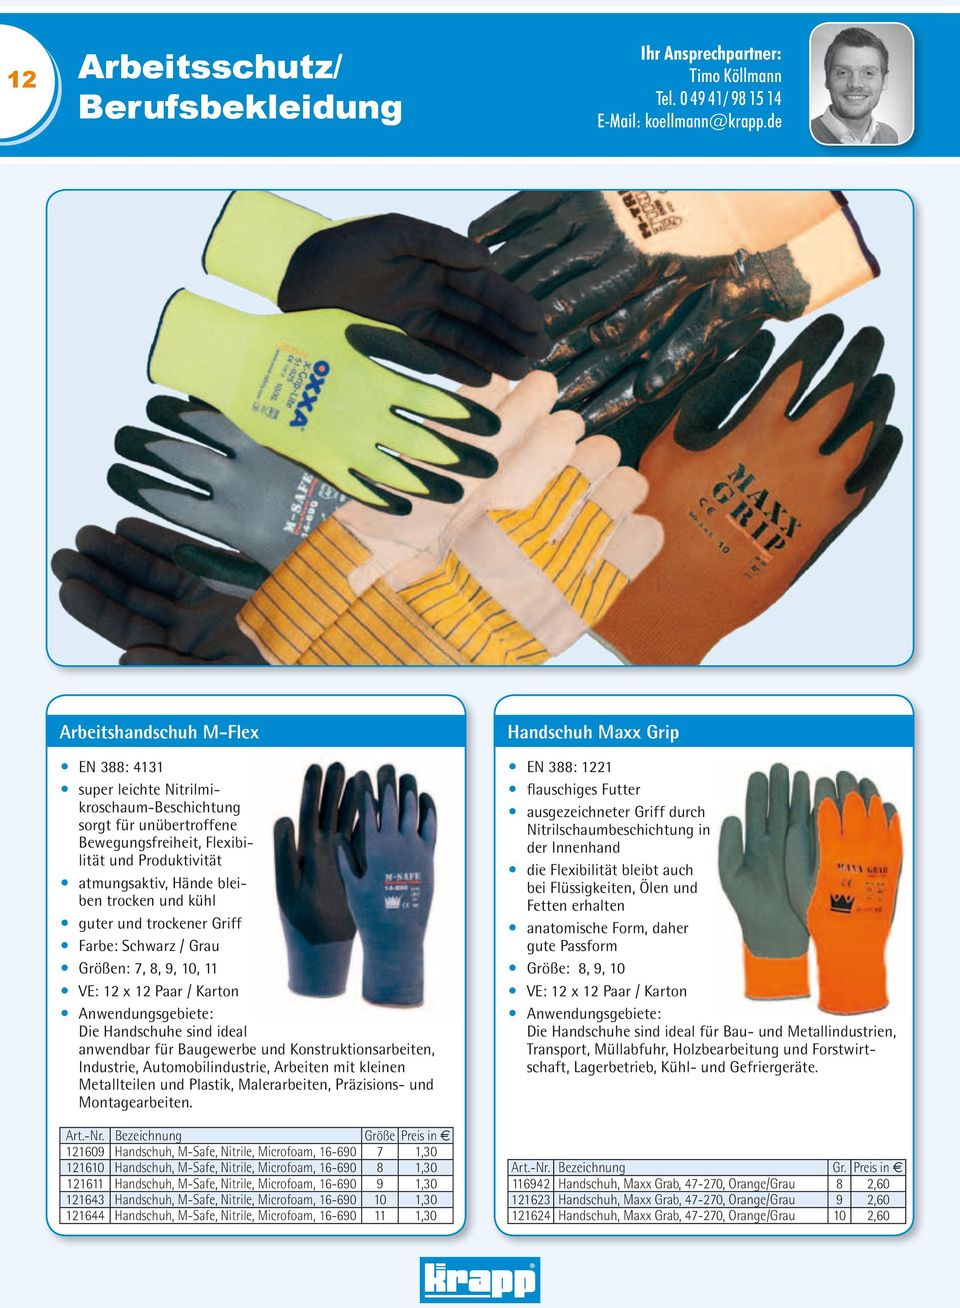 kühl guter und trockener Griff Farbe: Schwarz / Grau Größen: 7, 8, 9, 10, 11 VE: 12 x 12 Paar / Karton Anwendungsgebiete: Die Handschuhe sind ideal anwendbar für Baugewerbe und Konstruktionsarbeiten,